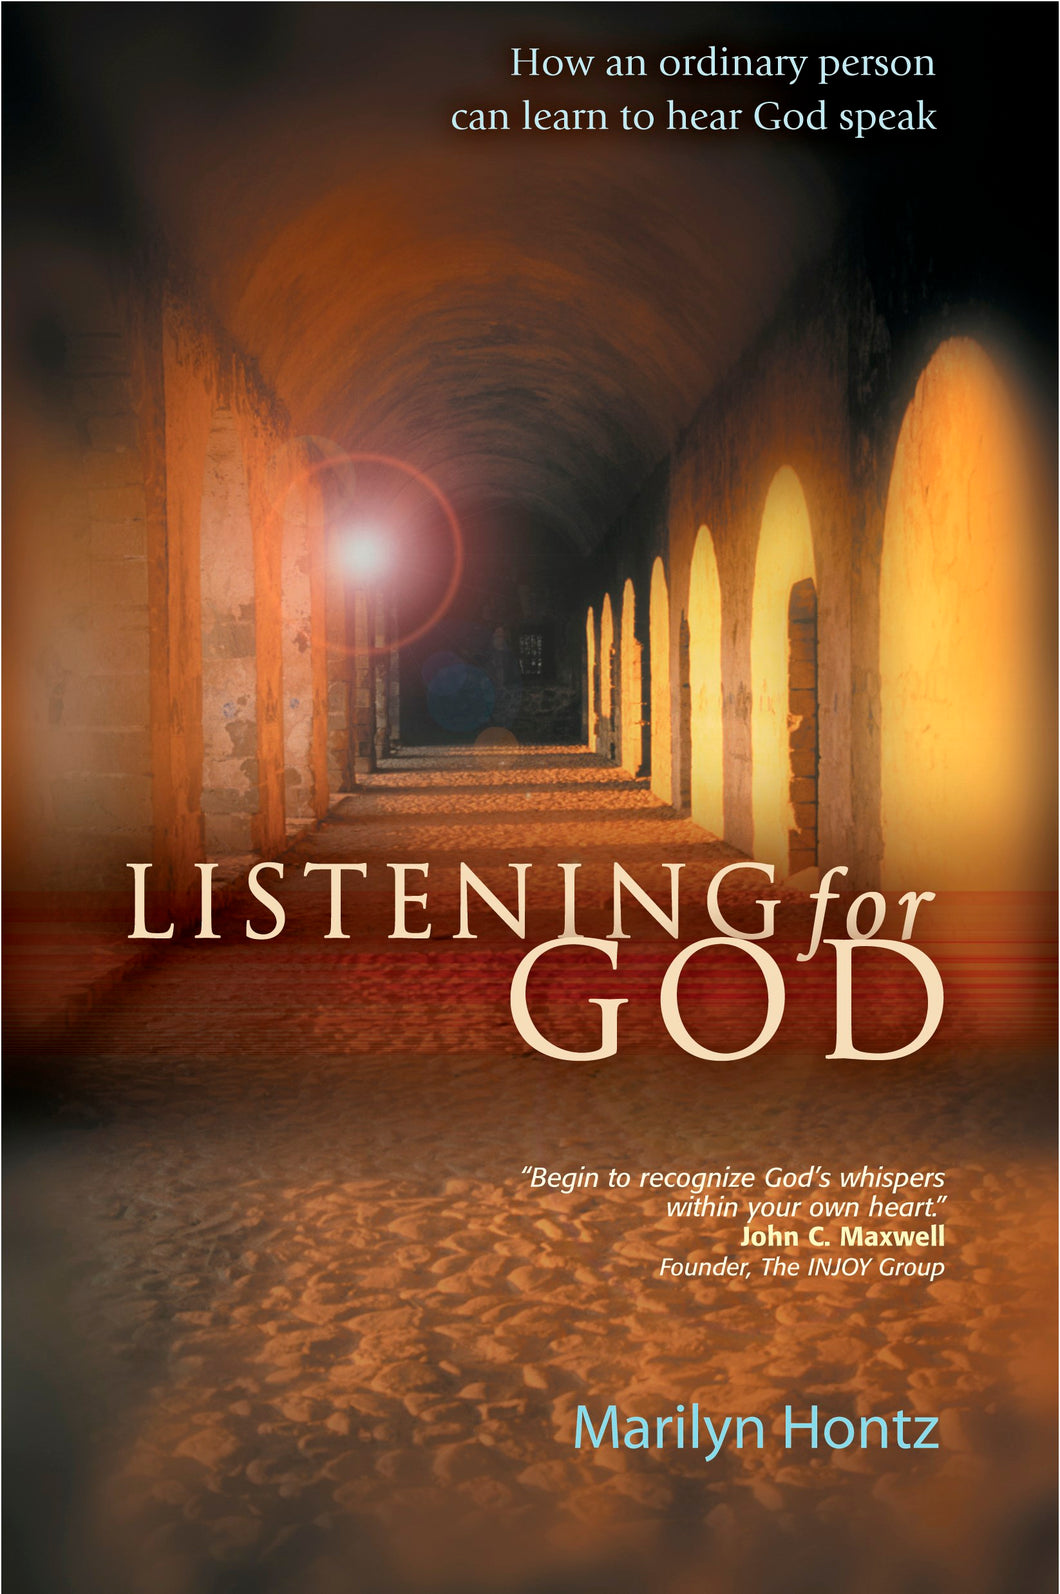 Listening For God